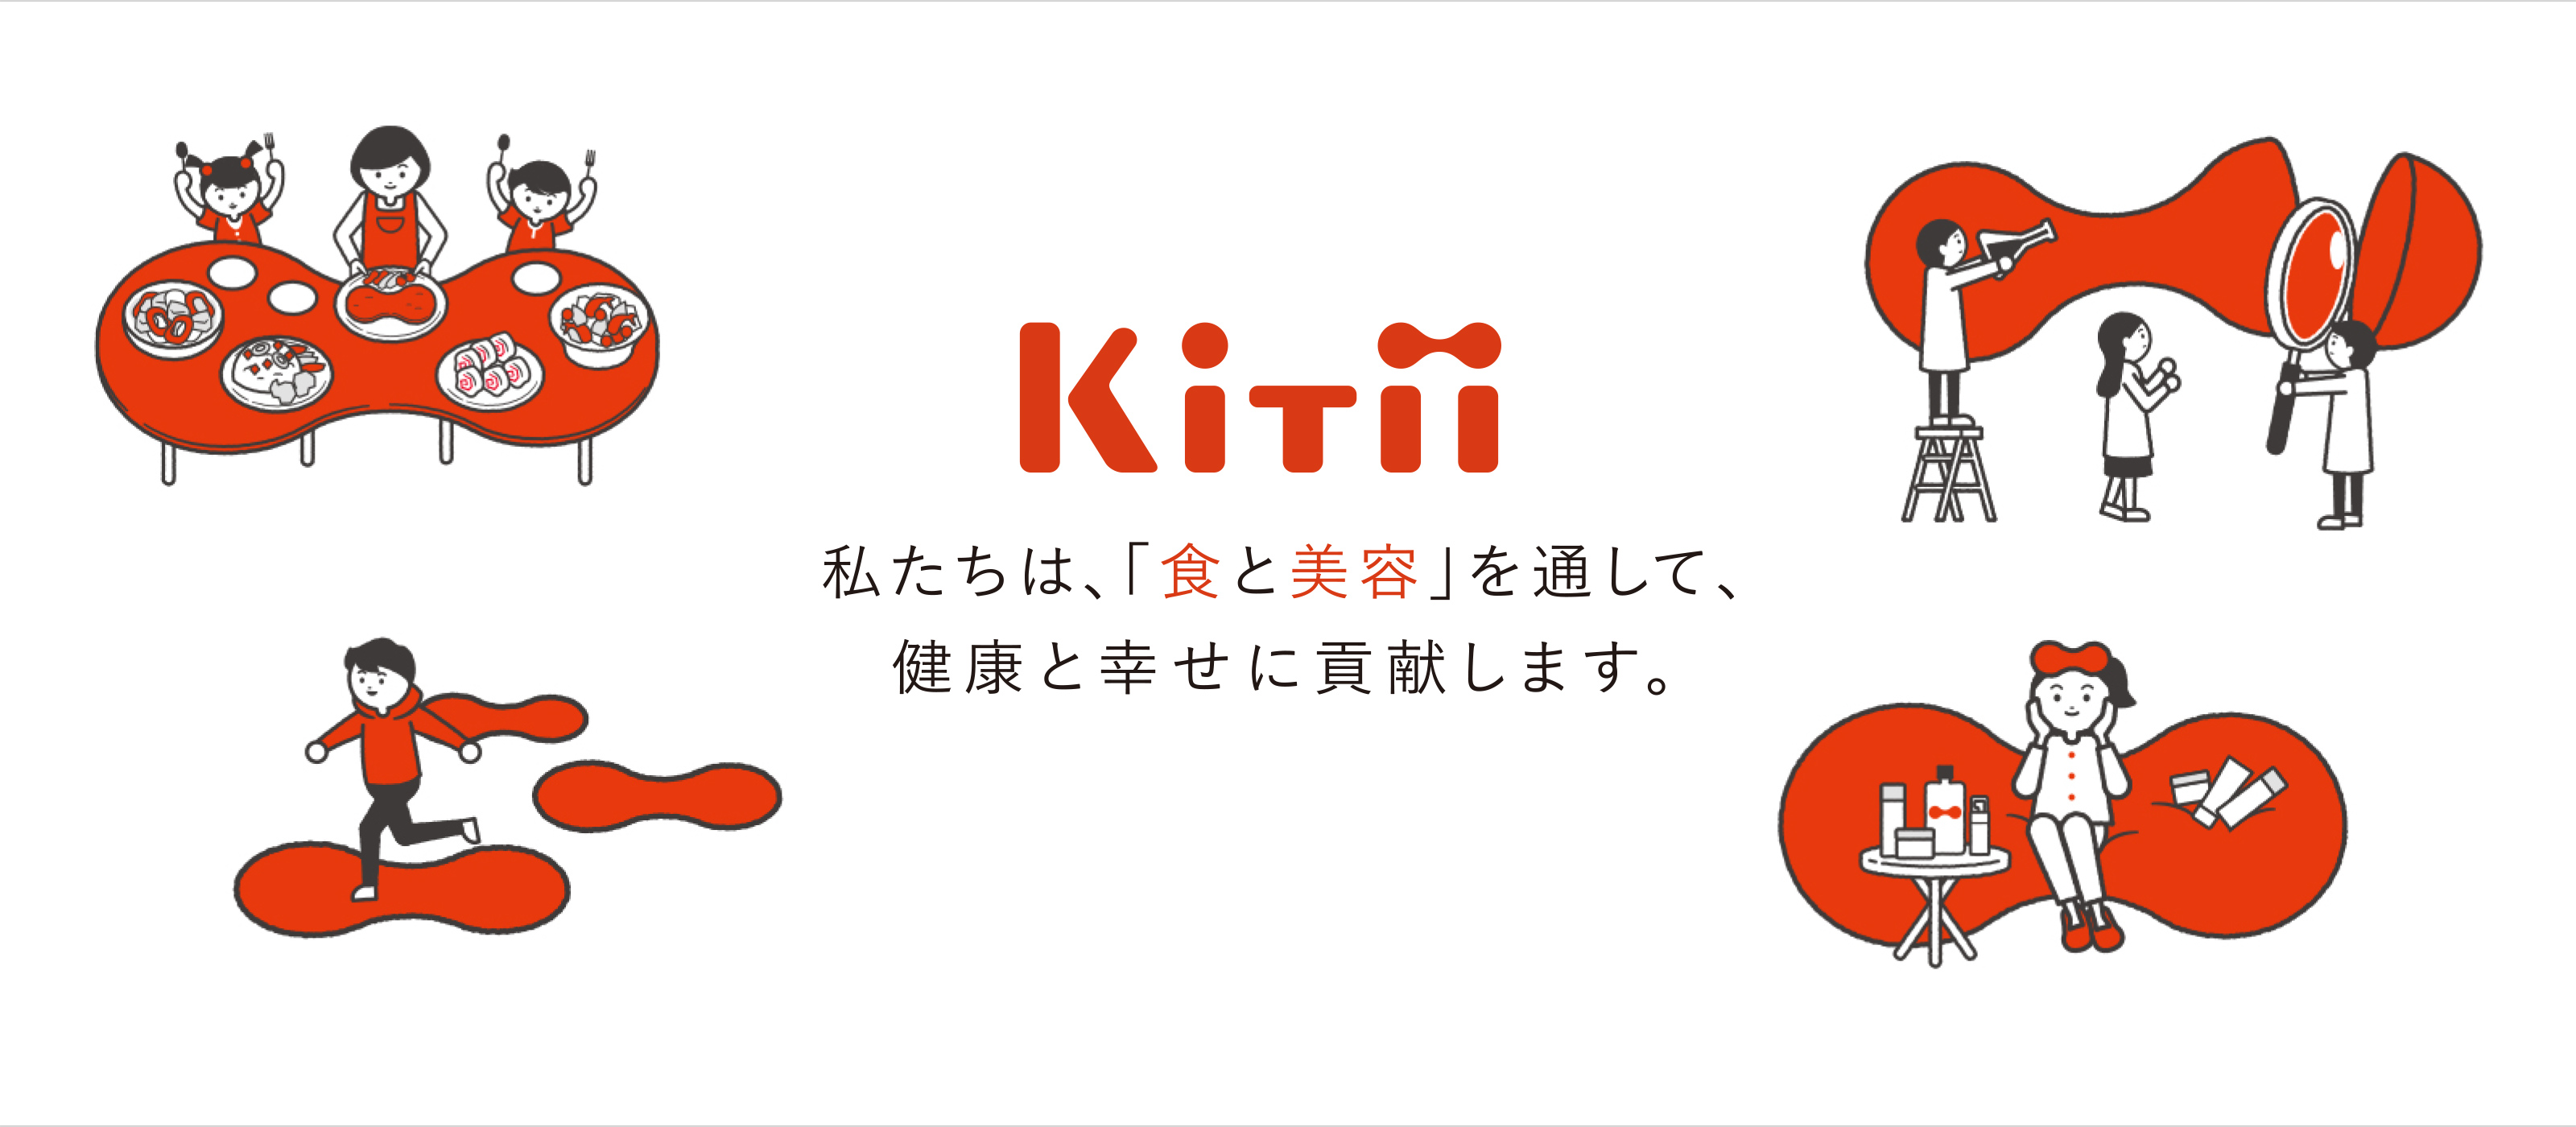 KiTii 私たちは、「食と美容」を通して、健康と幸せに貢献します。